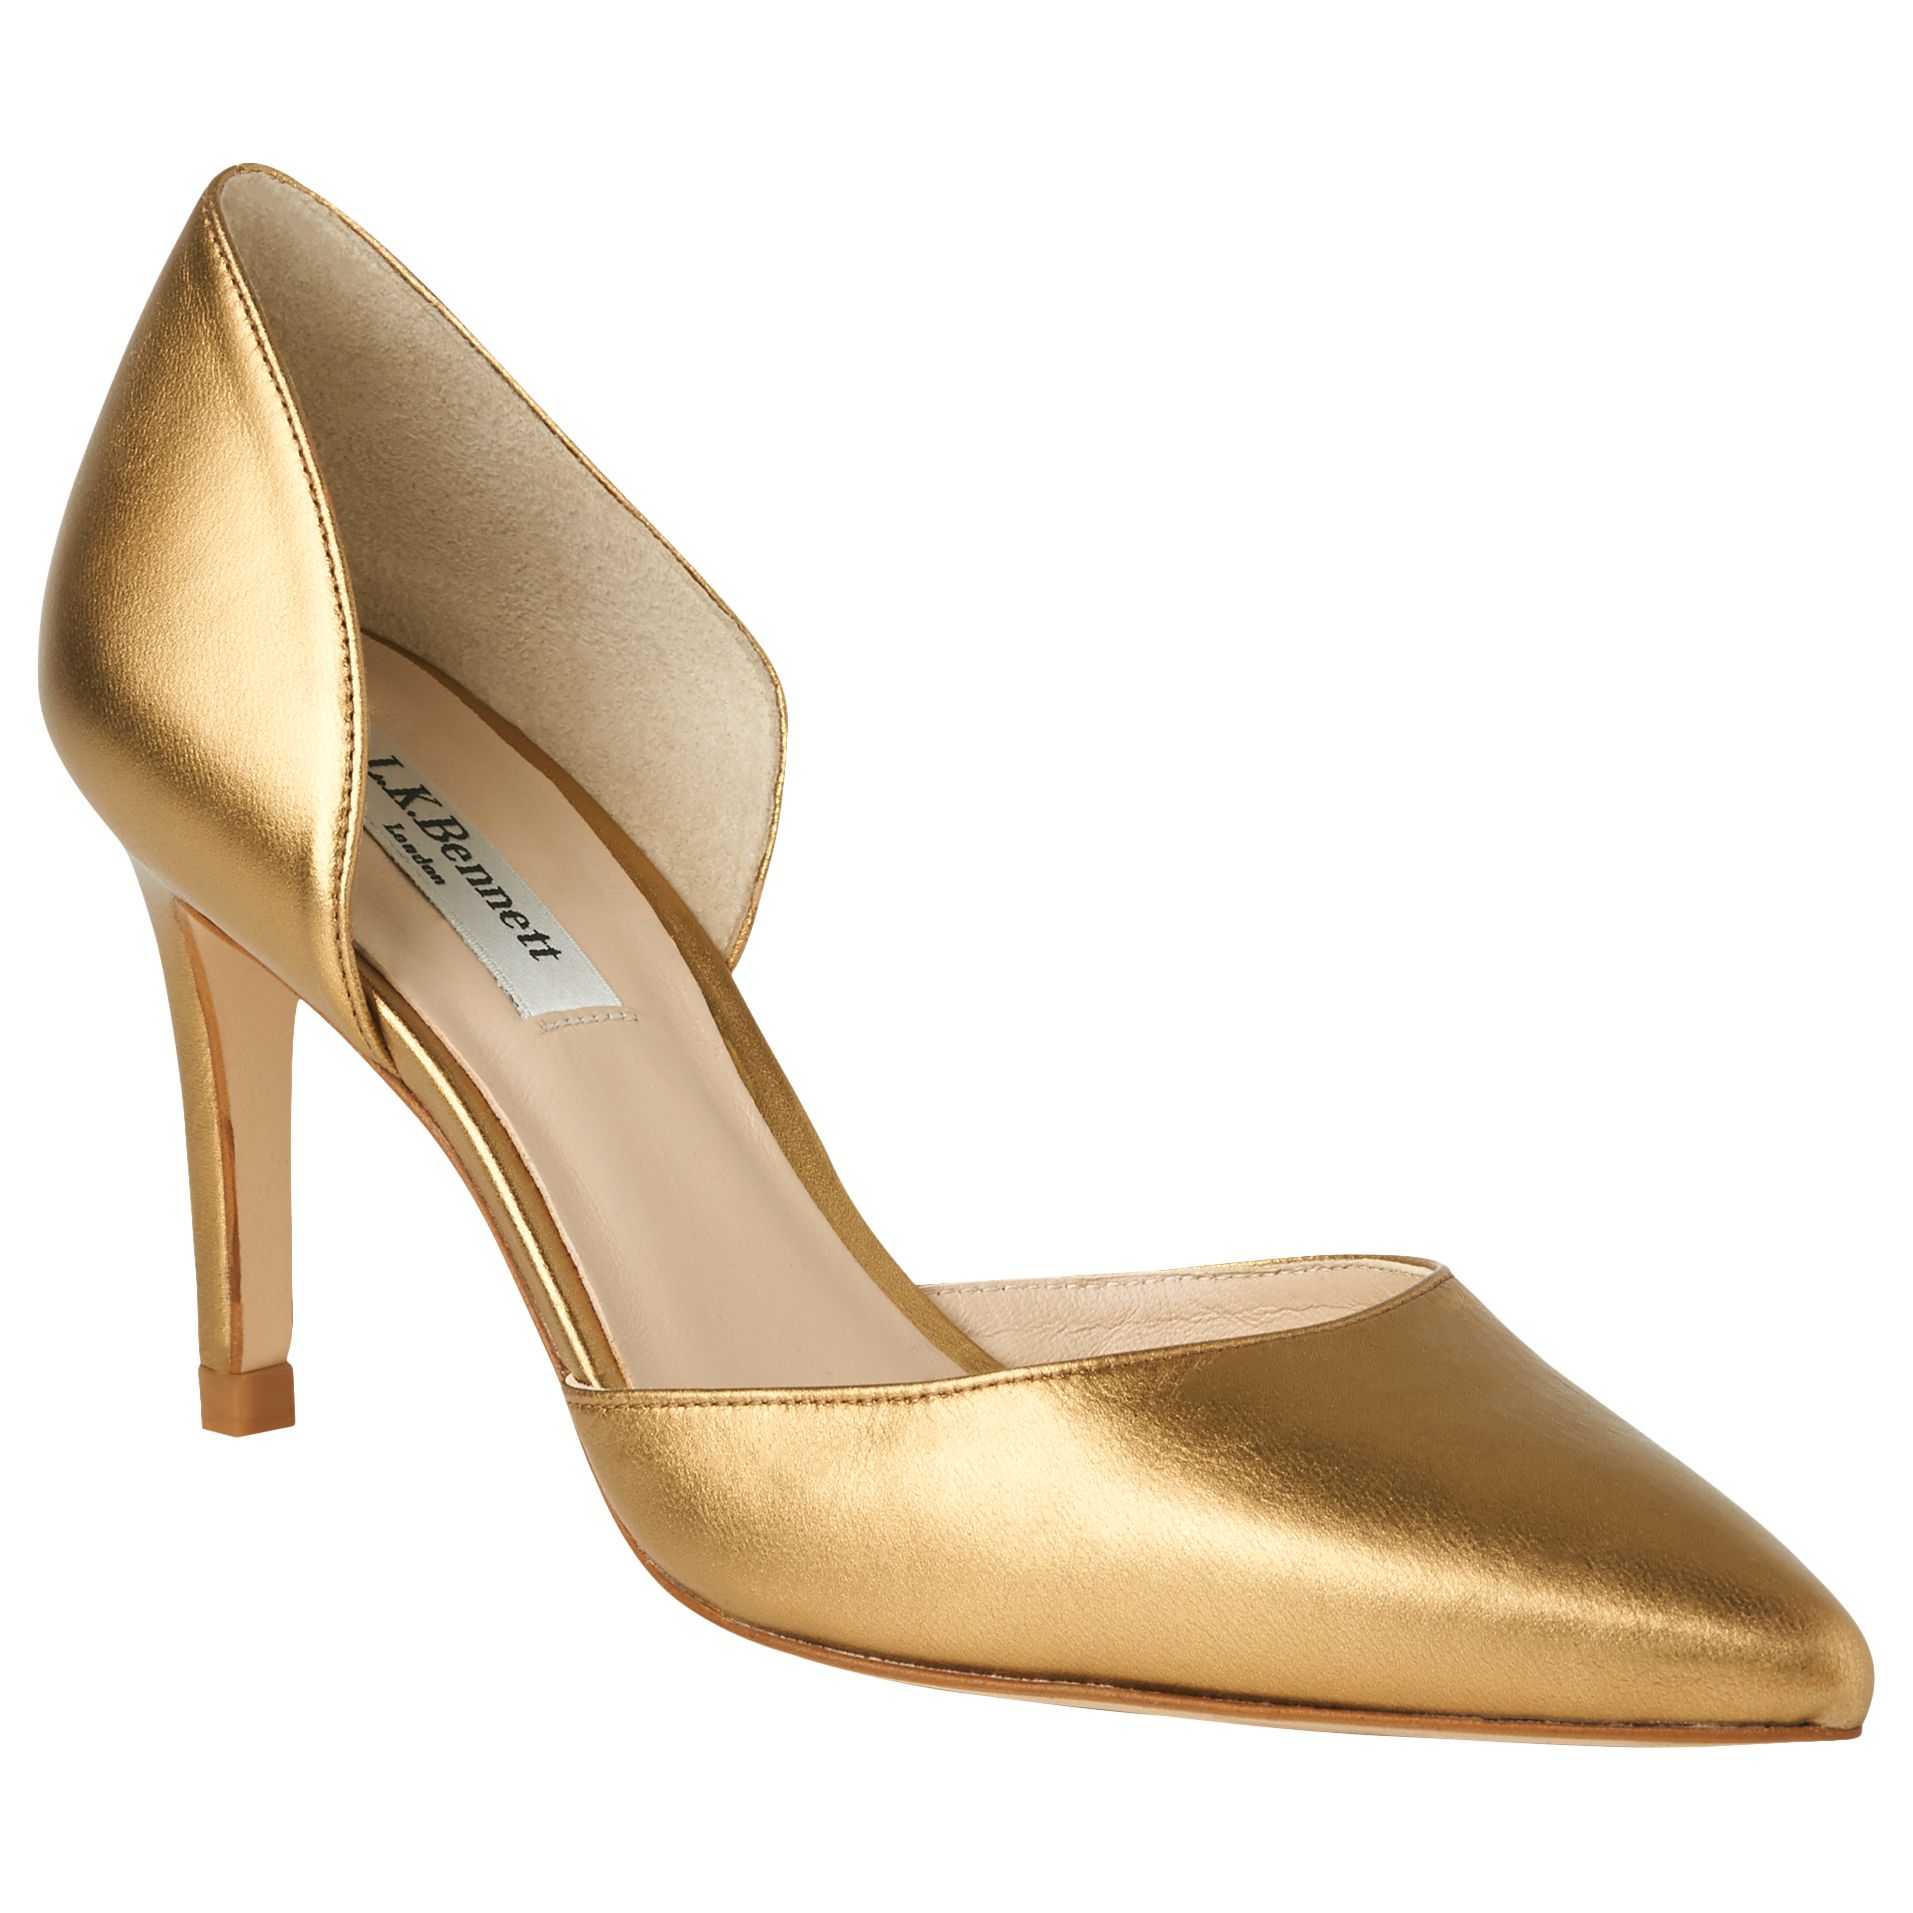 L.K. Bennett Flossie Stiletto Heeled Court Shoes, Bronze, 7